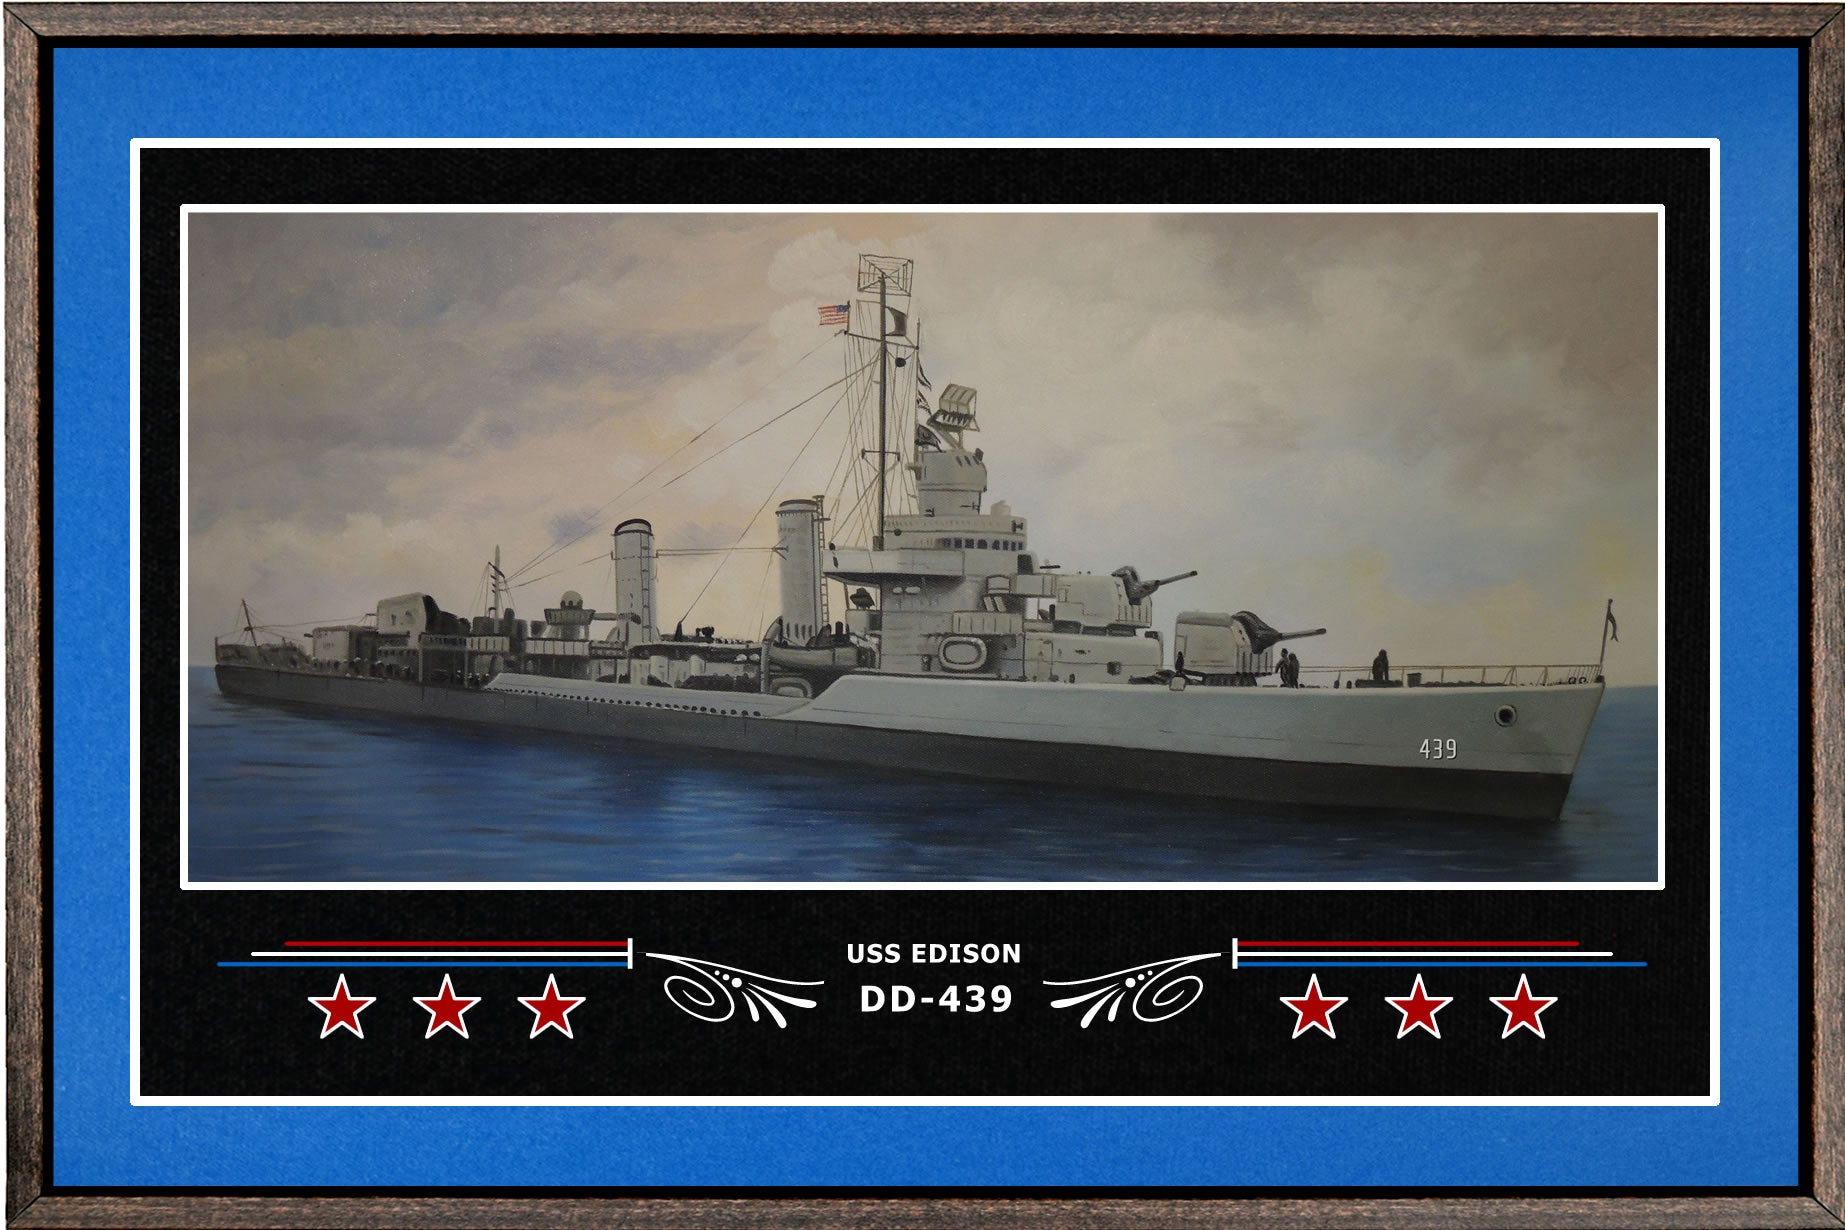 USS EDISON DD 439 BOX FRAMED CANVAS ART BLUE